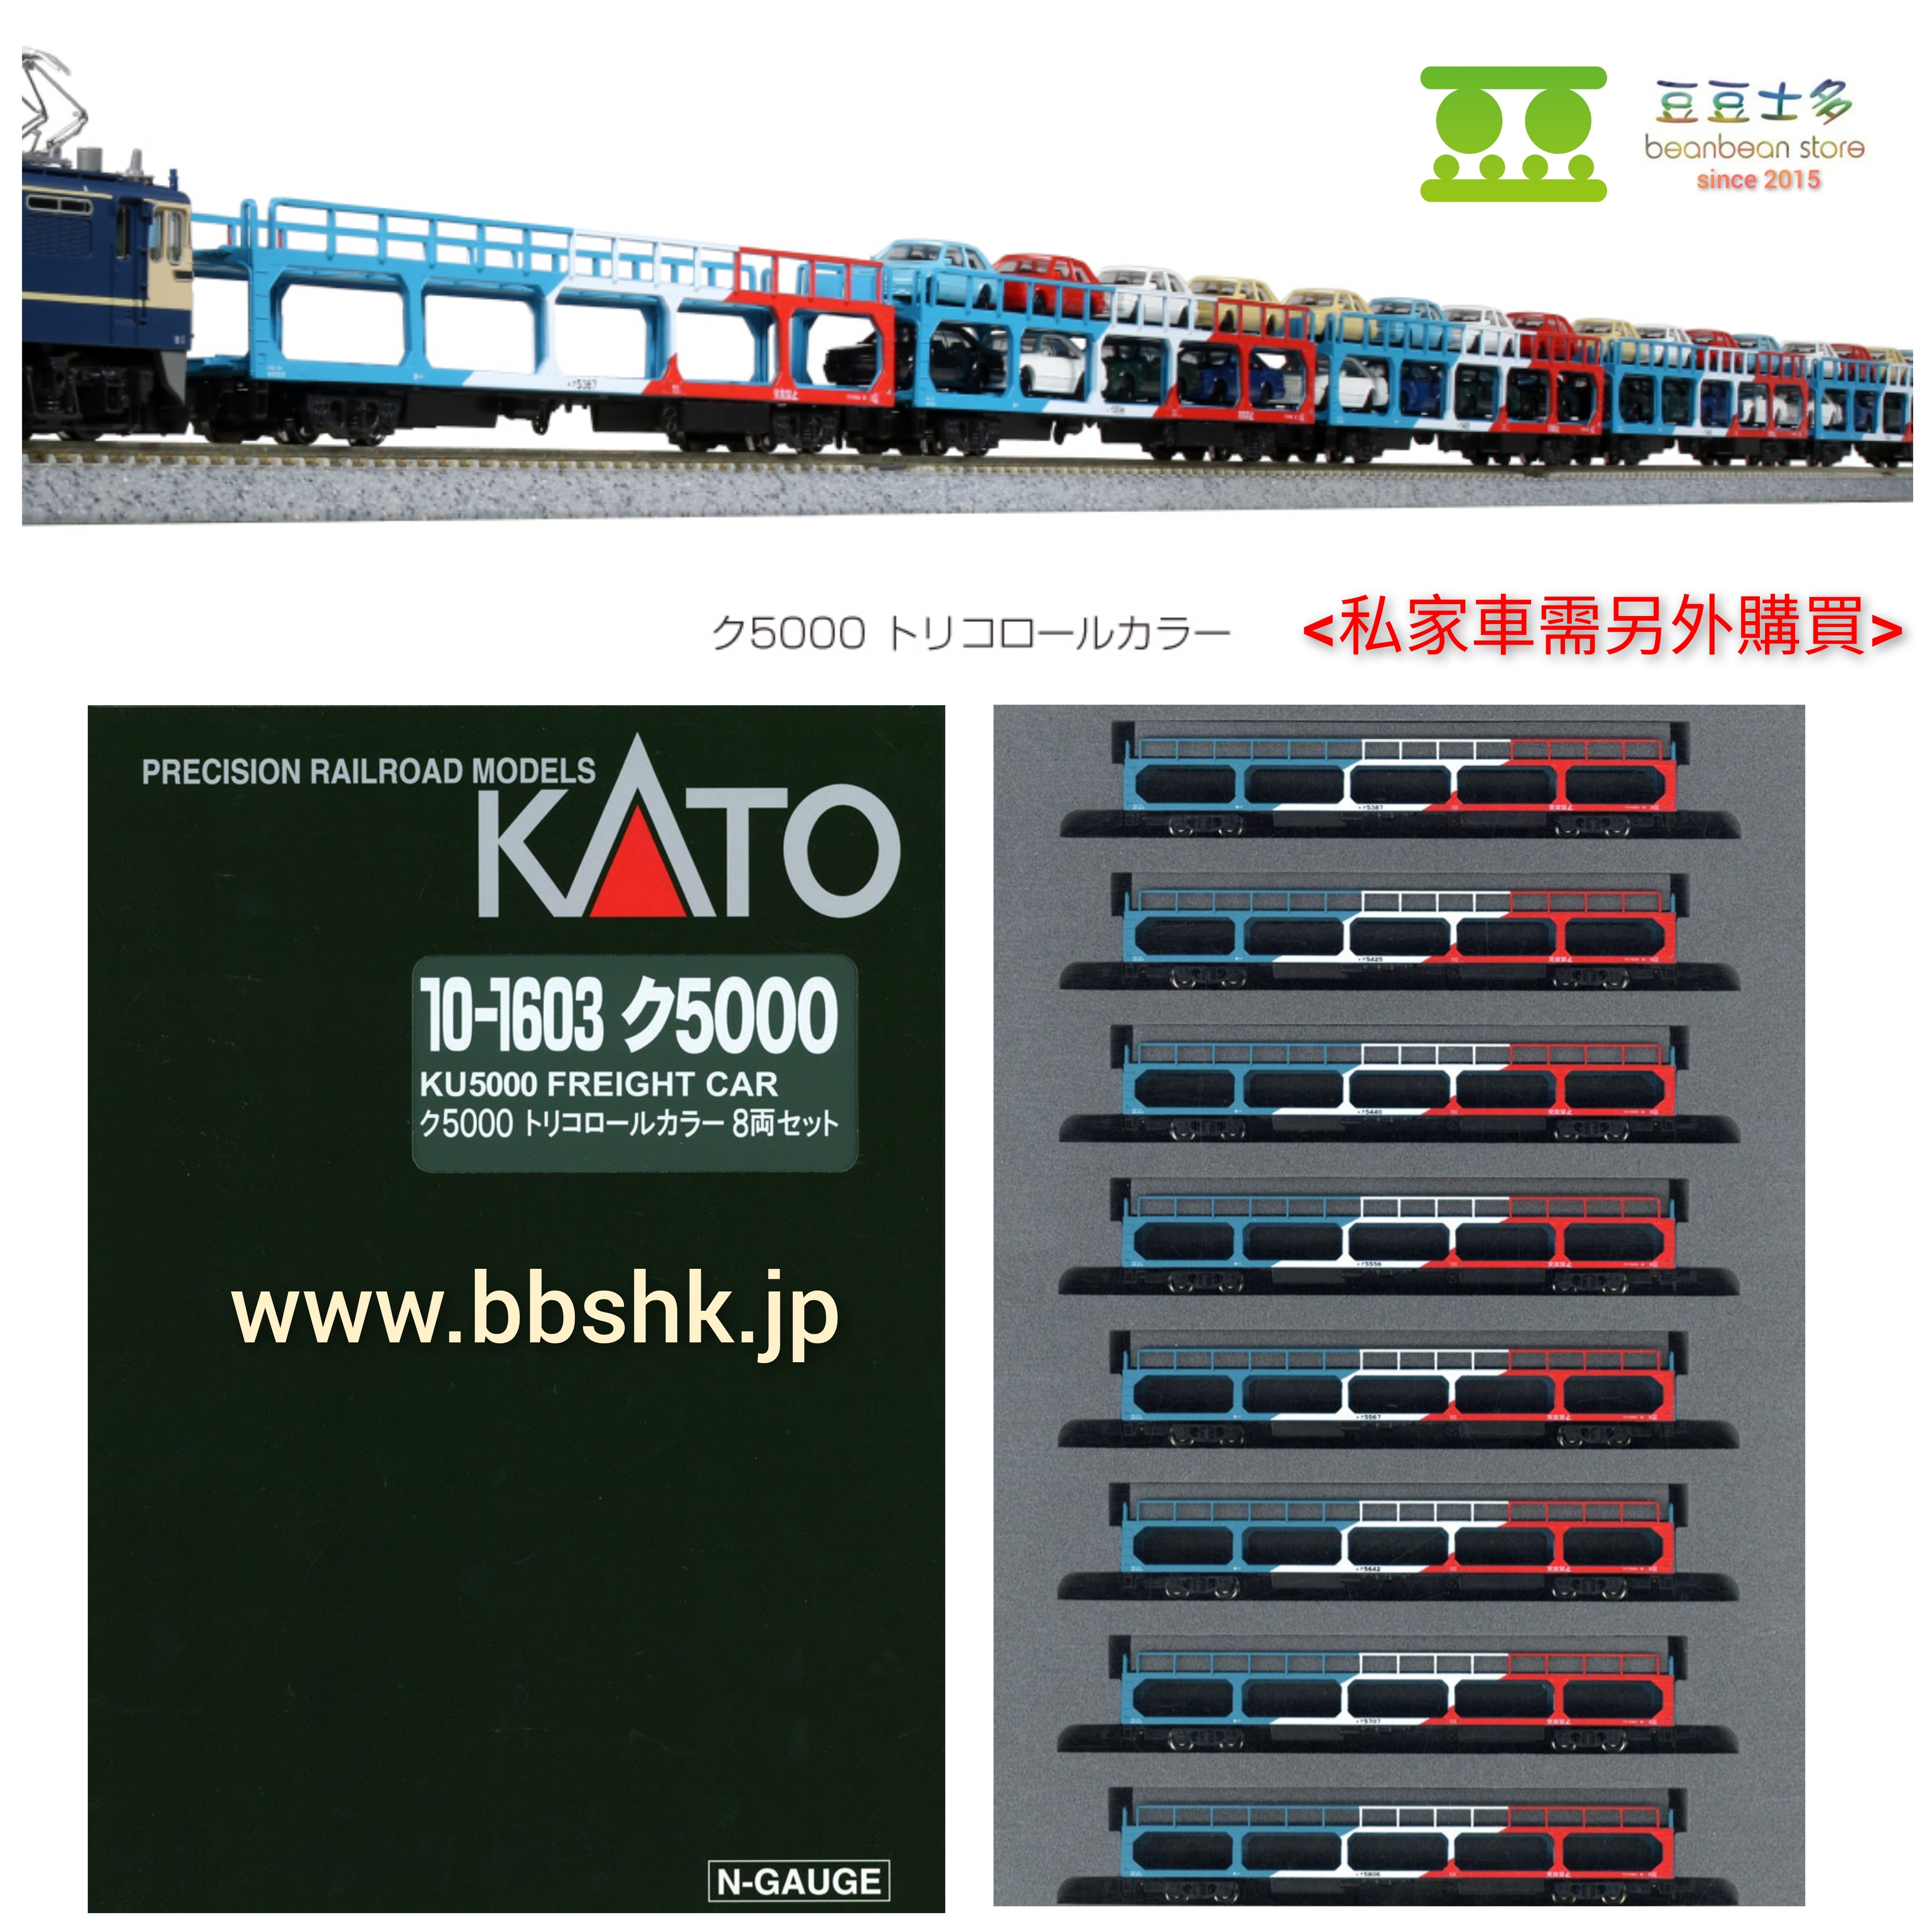 KATO 10-1603 KU 5000 汽車運送貨車(8両- 3色版)